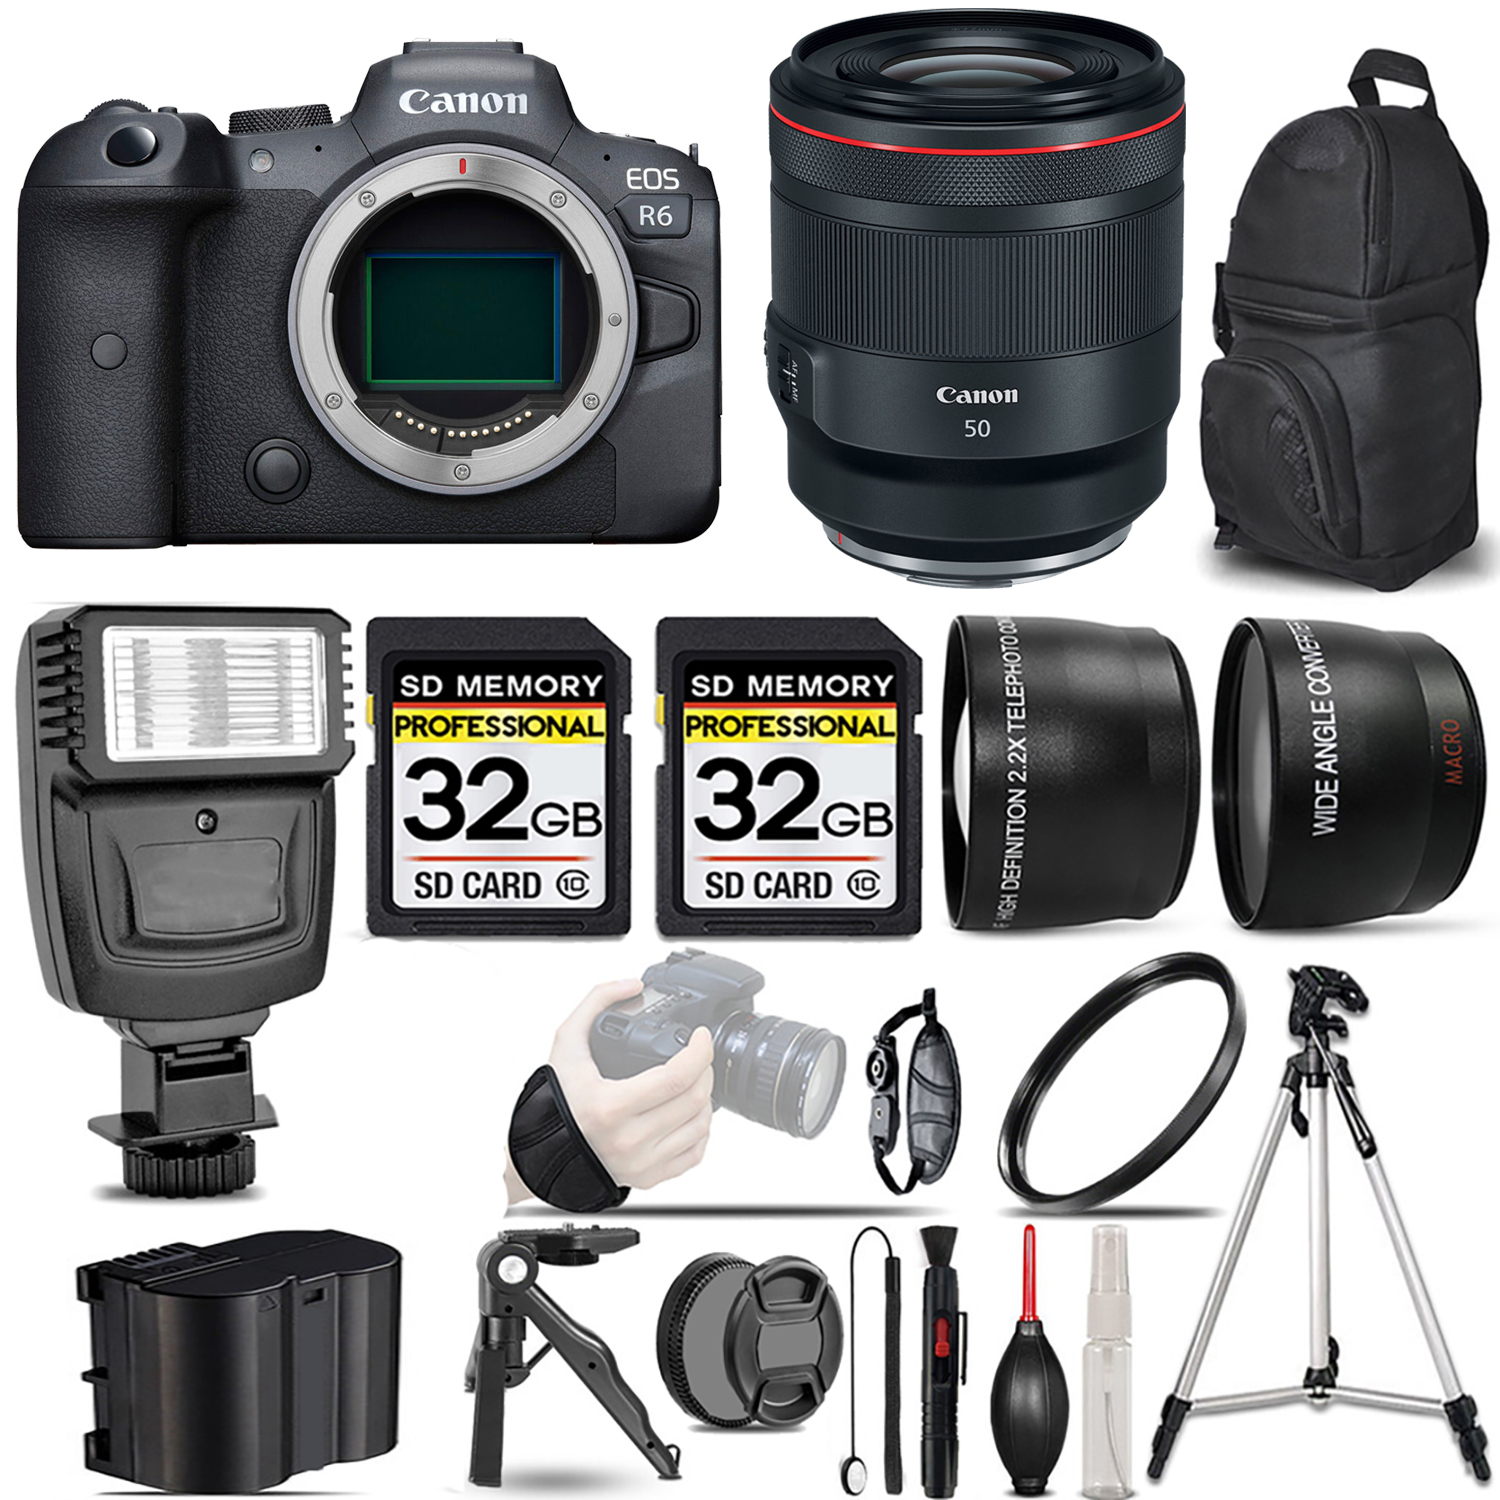 EOS R6 Mirrorless Camera + 50mm f/1.2 L USM Lens + Flash + 64GB - Kit *FREE SHIPPING*